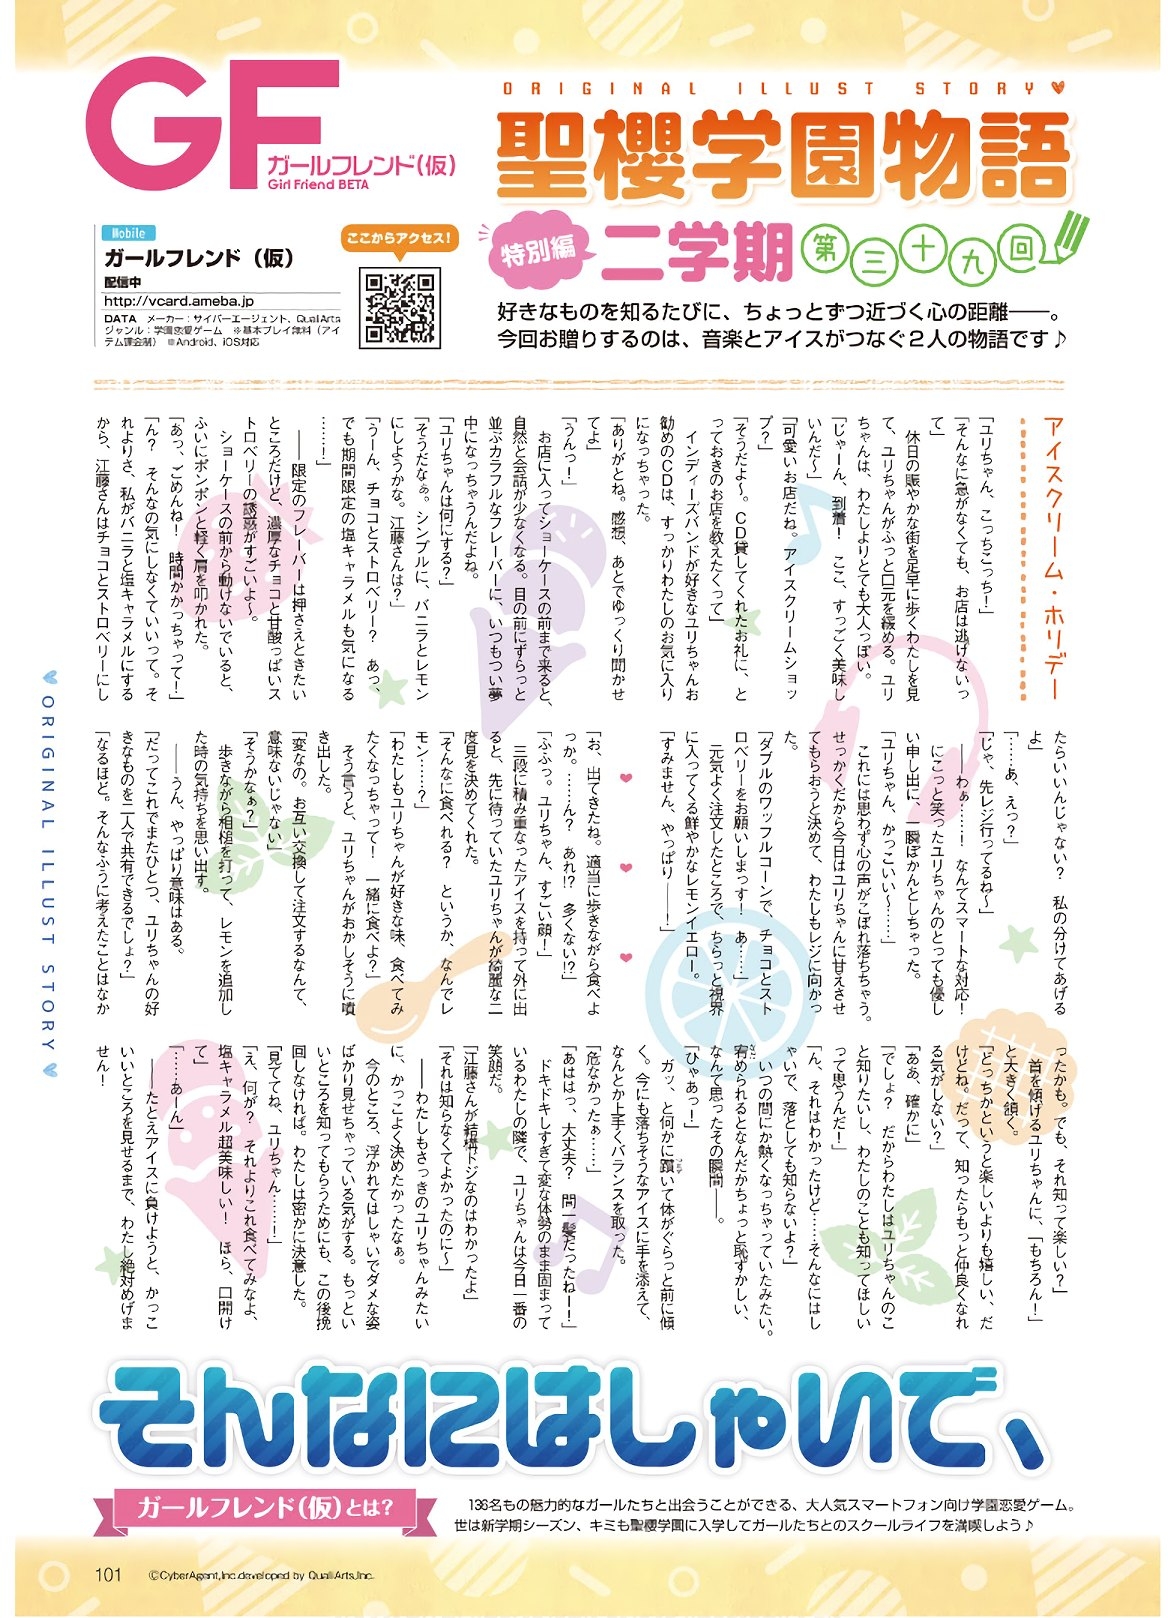 Dengeki G's Magazine #286 - May 2021 98